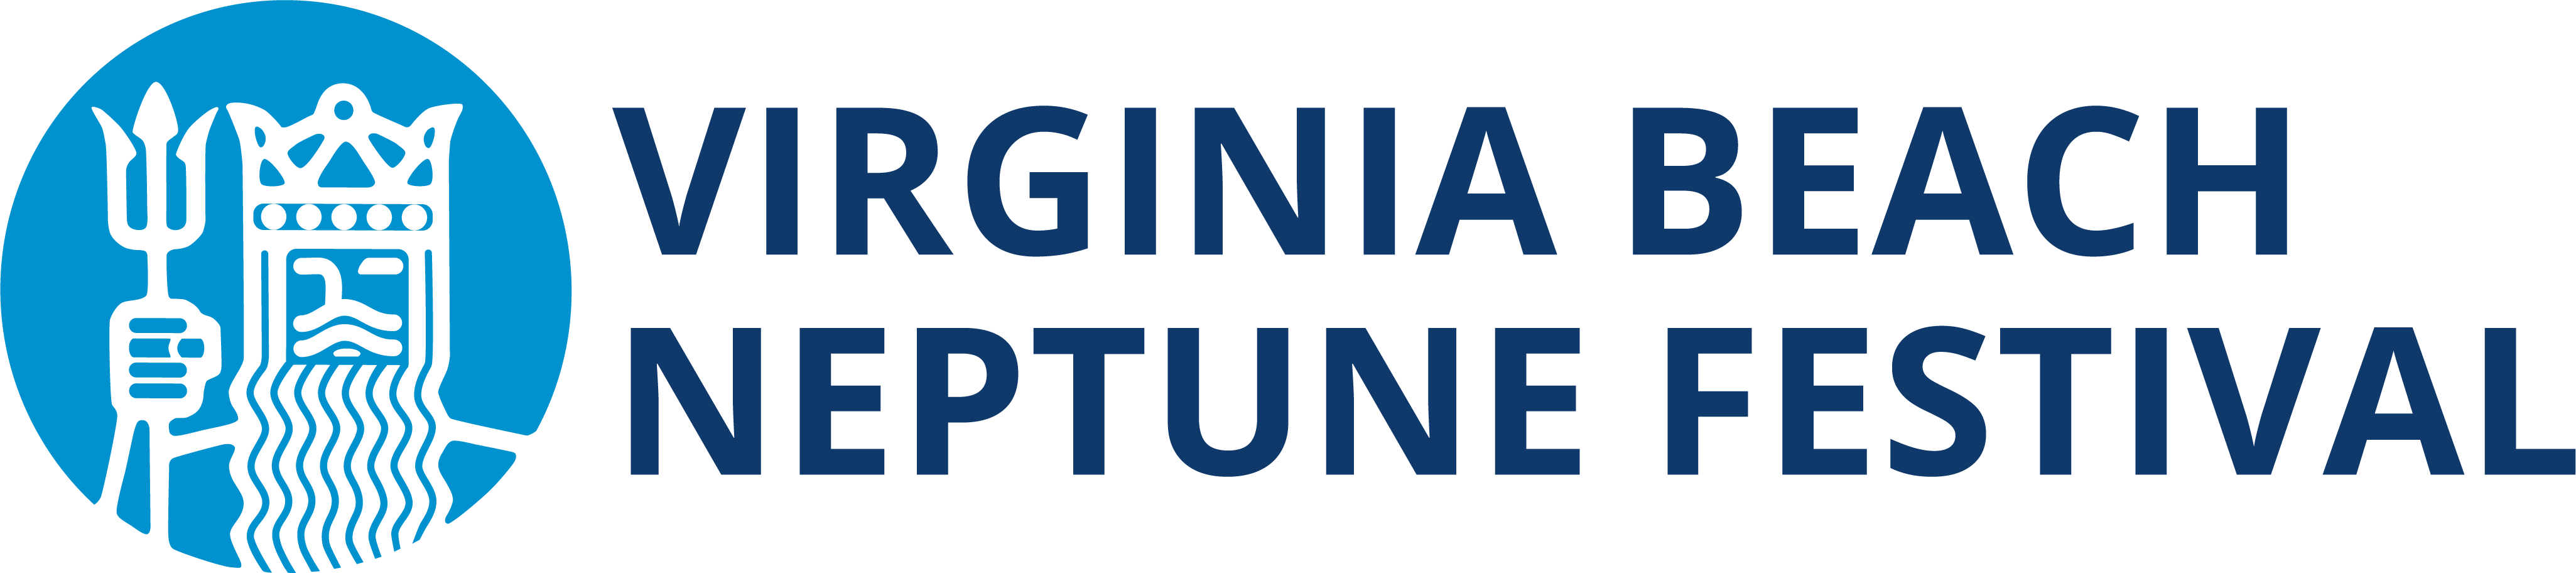 Neptune Festival Logo (Web Only)